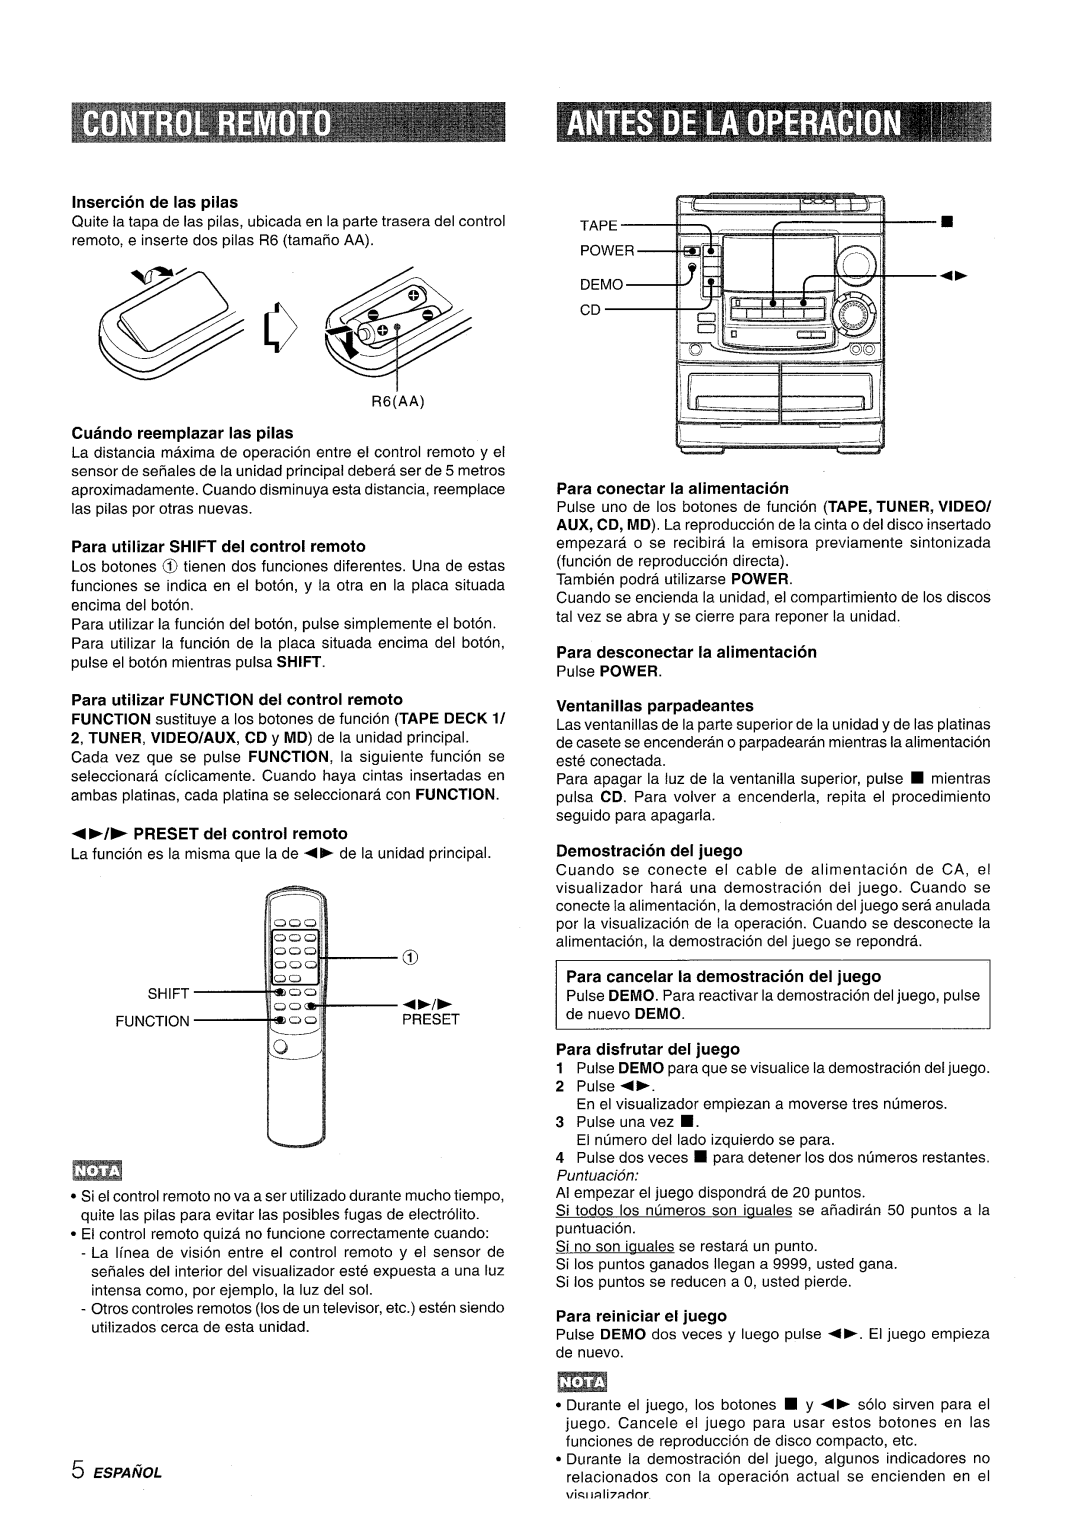 Aiwa NSX-A508 manual Para desconectar la alimentacion, Para disfrutar del juego 